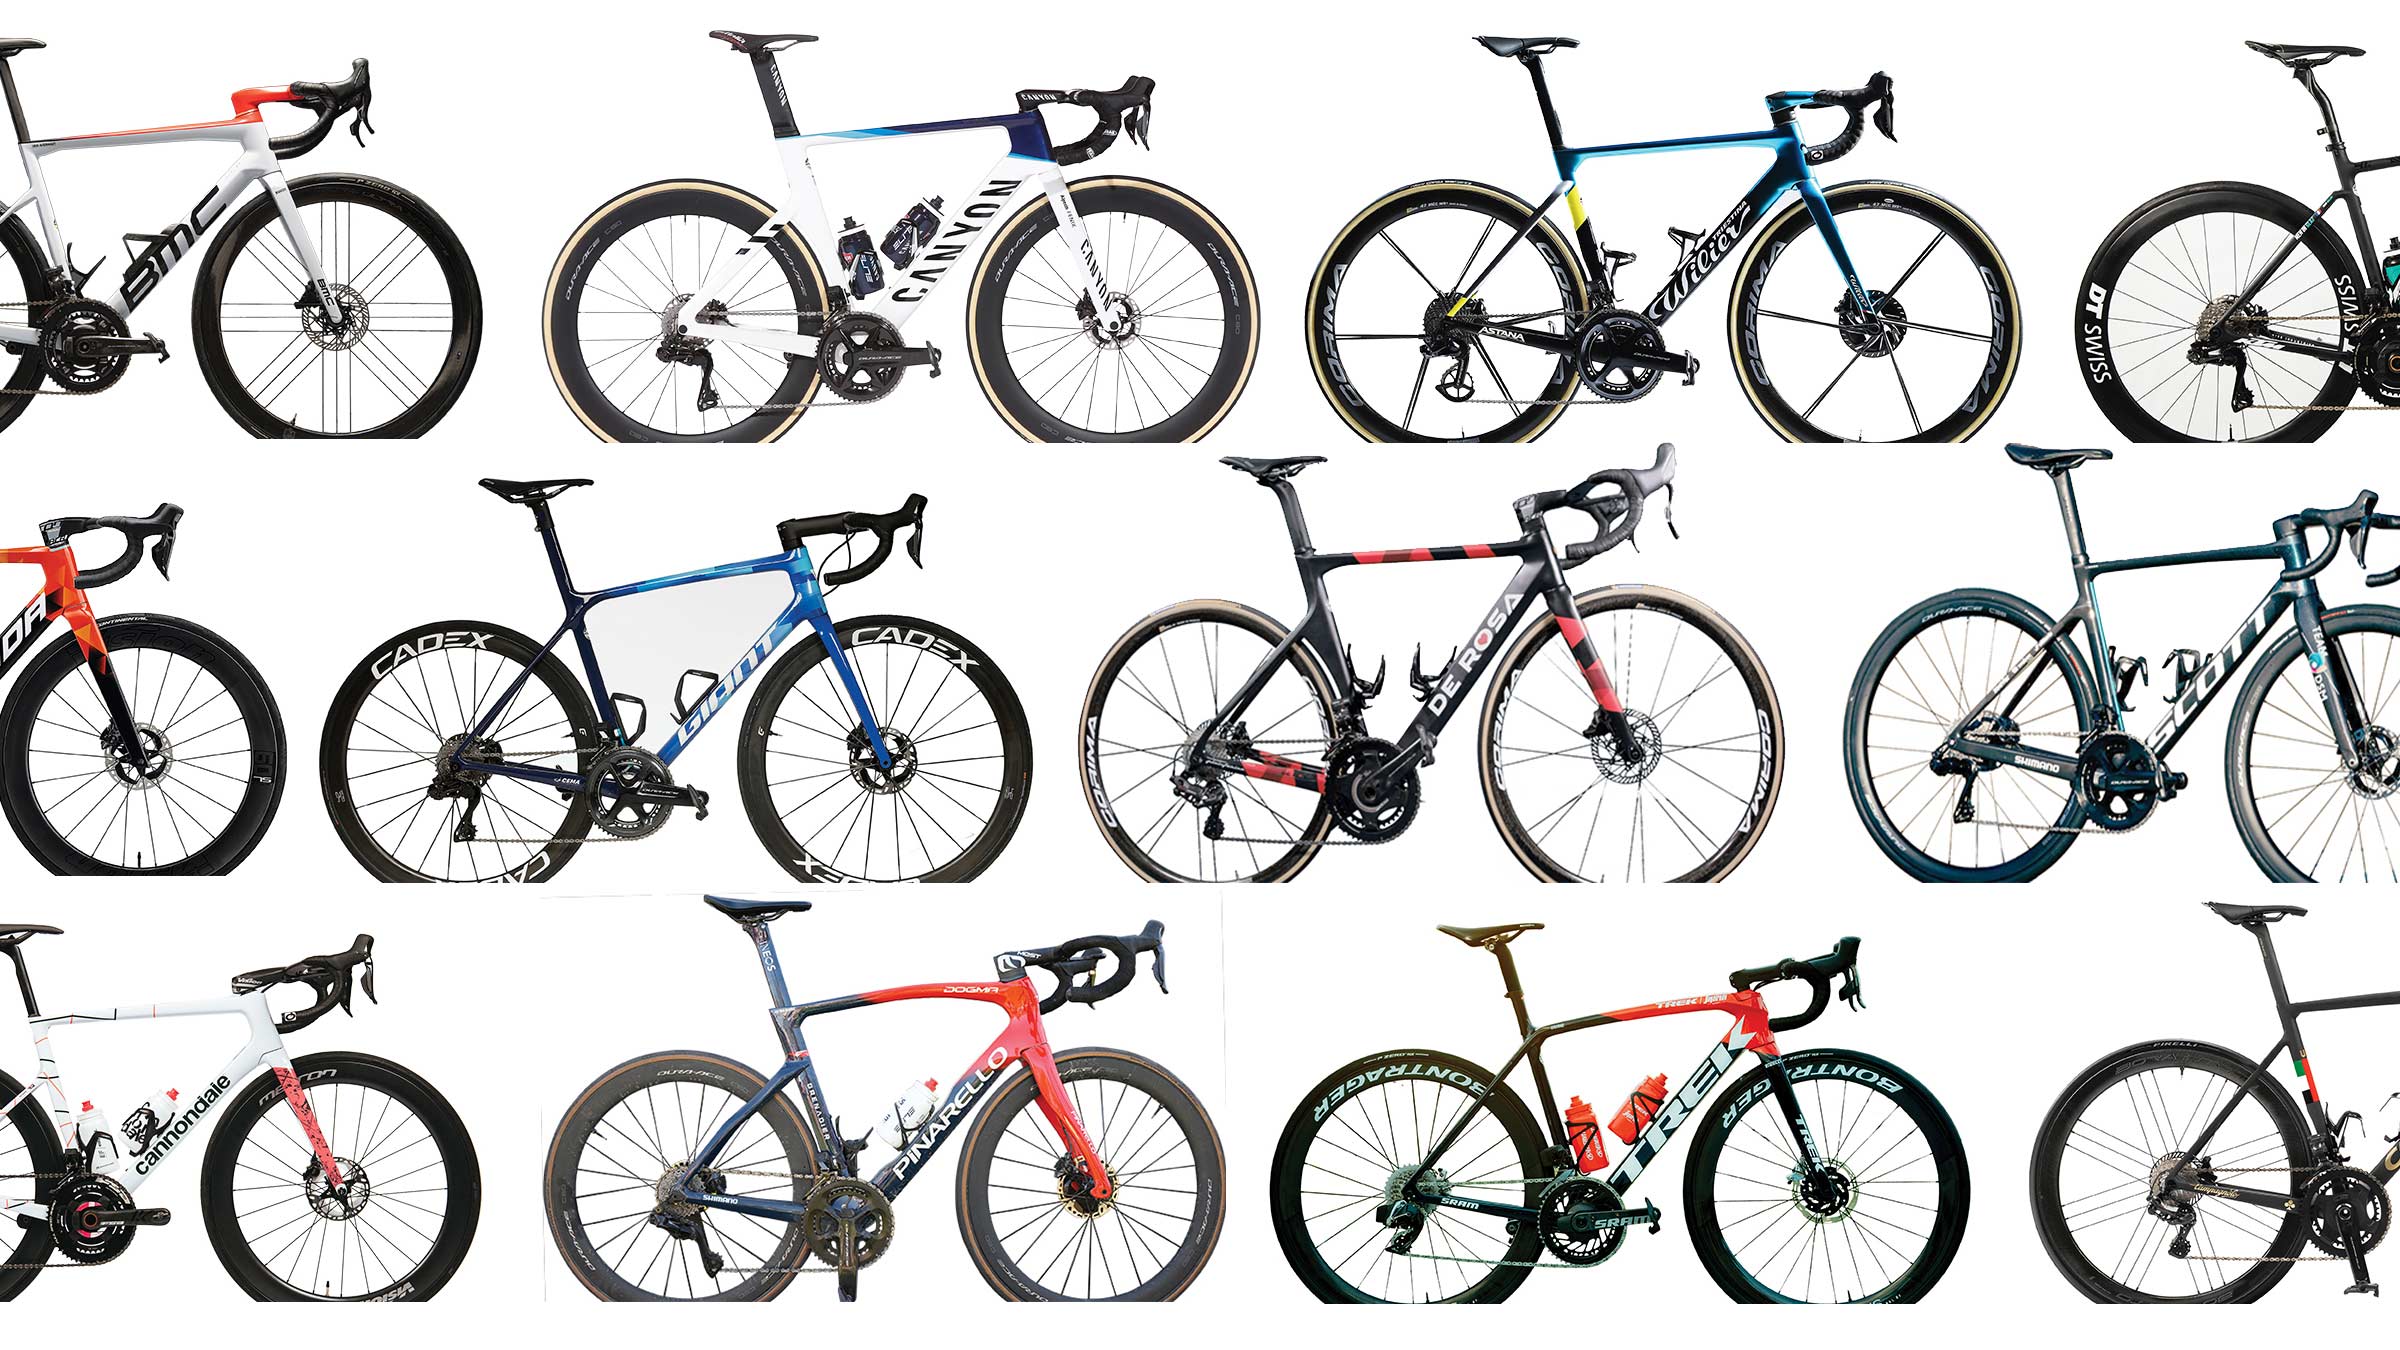 The bikes of the Tour de France